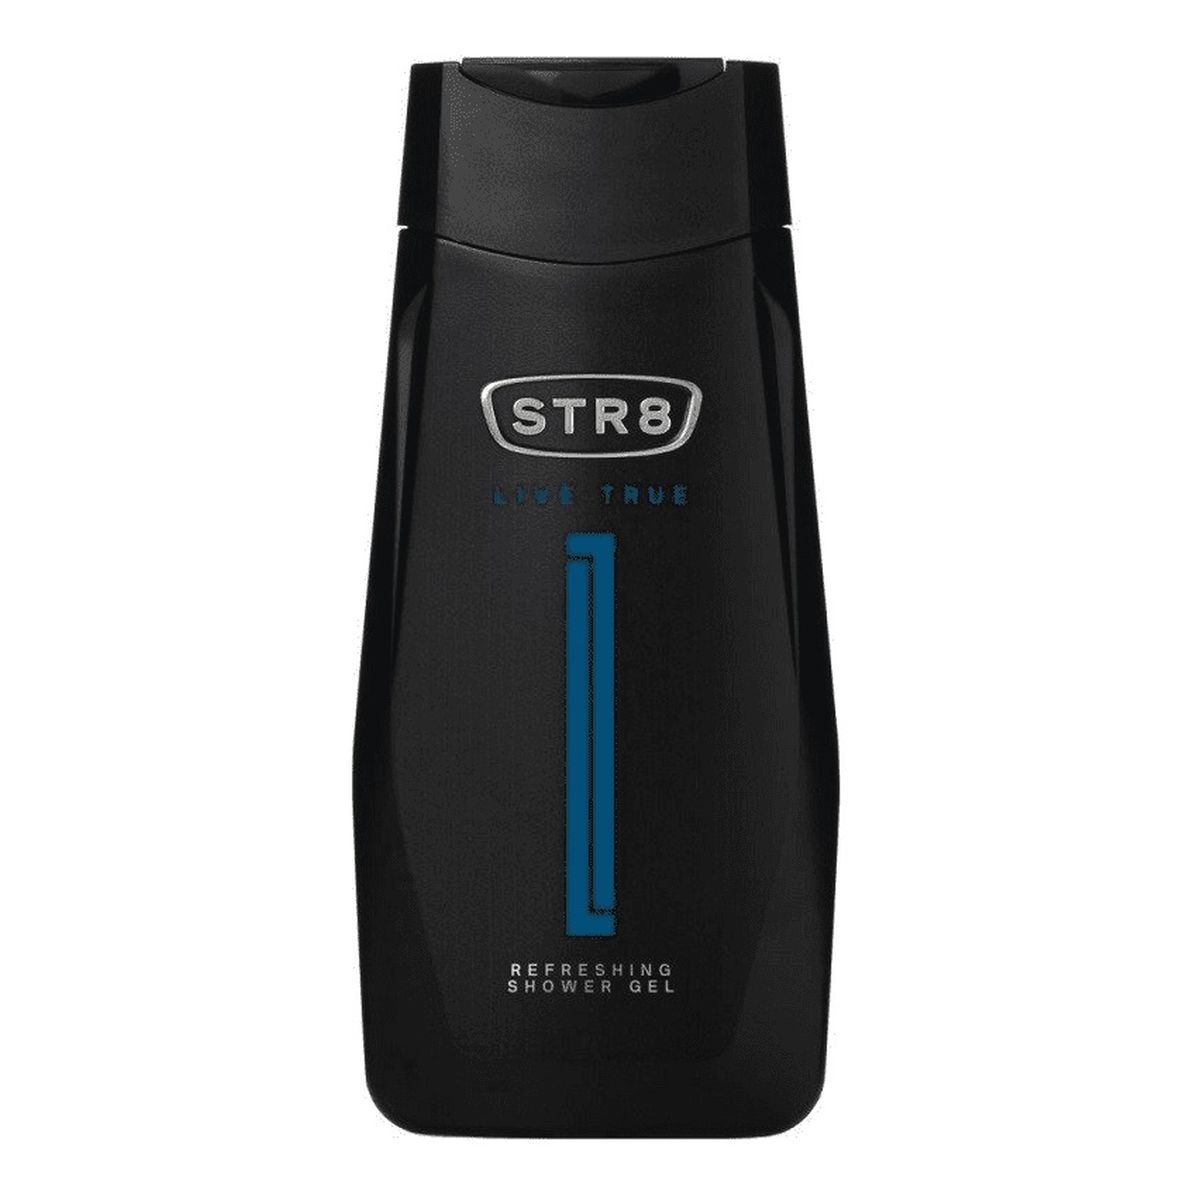 STR8 Live True odświeżający Żel pod prysznic 250ml